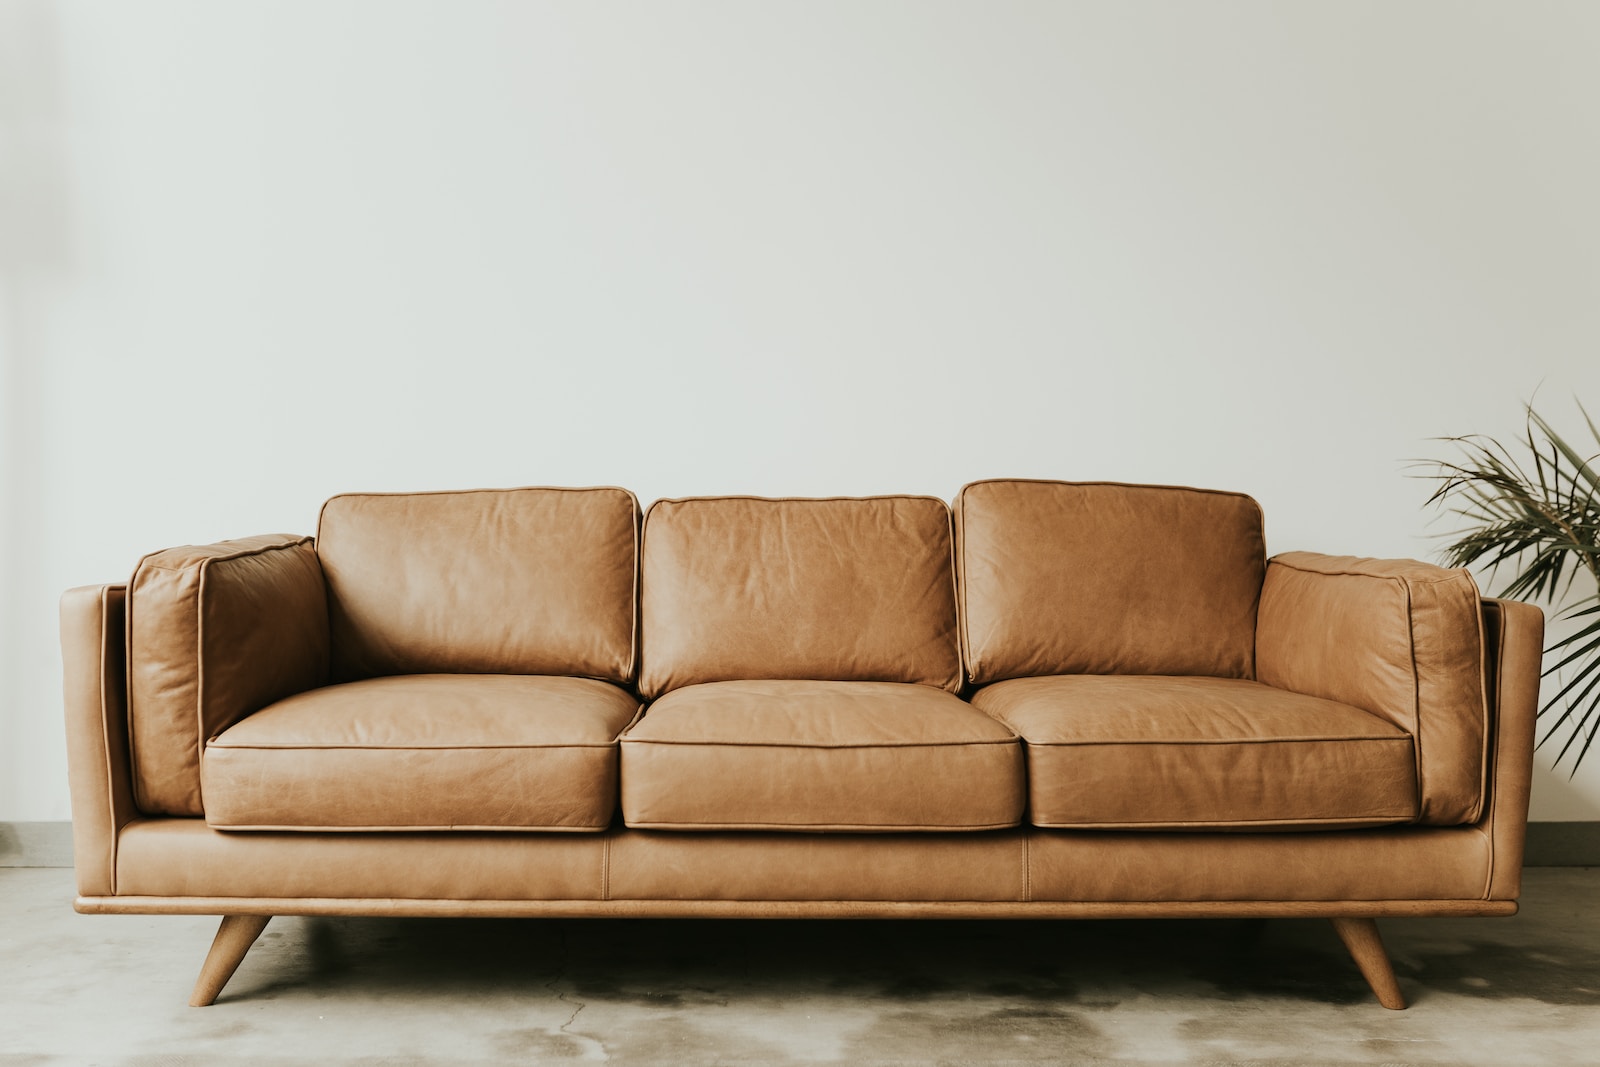 Comment entretenir et nettoyer son canapé ? (cuir ou tissu)